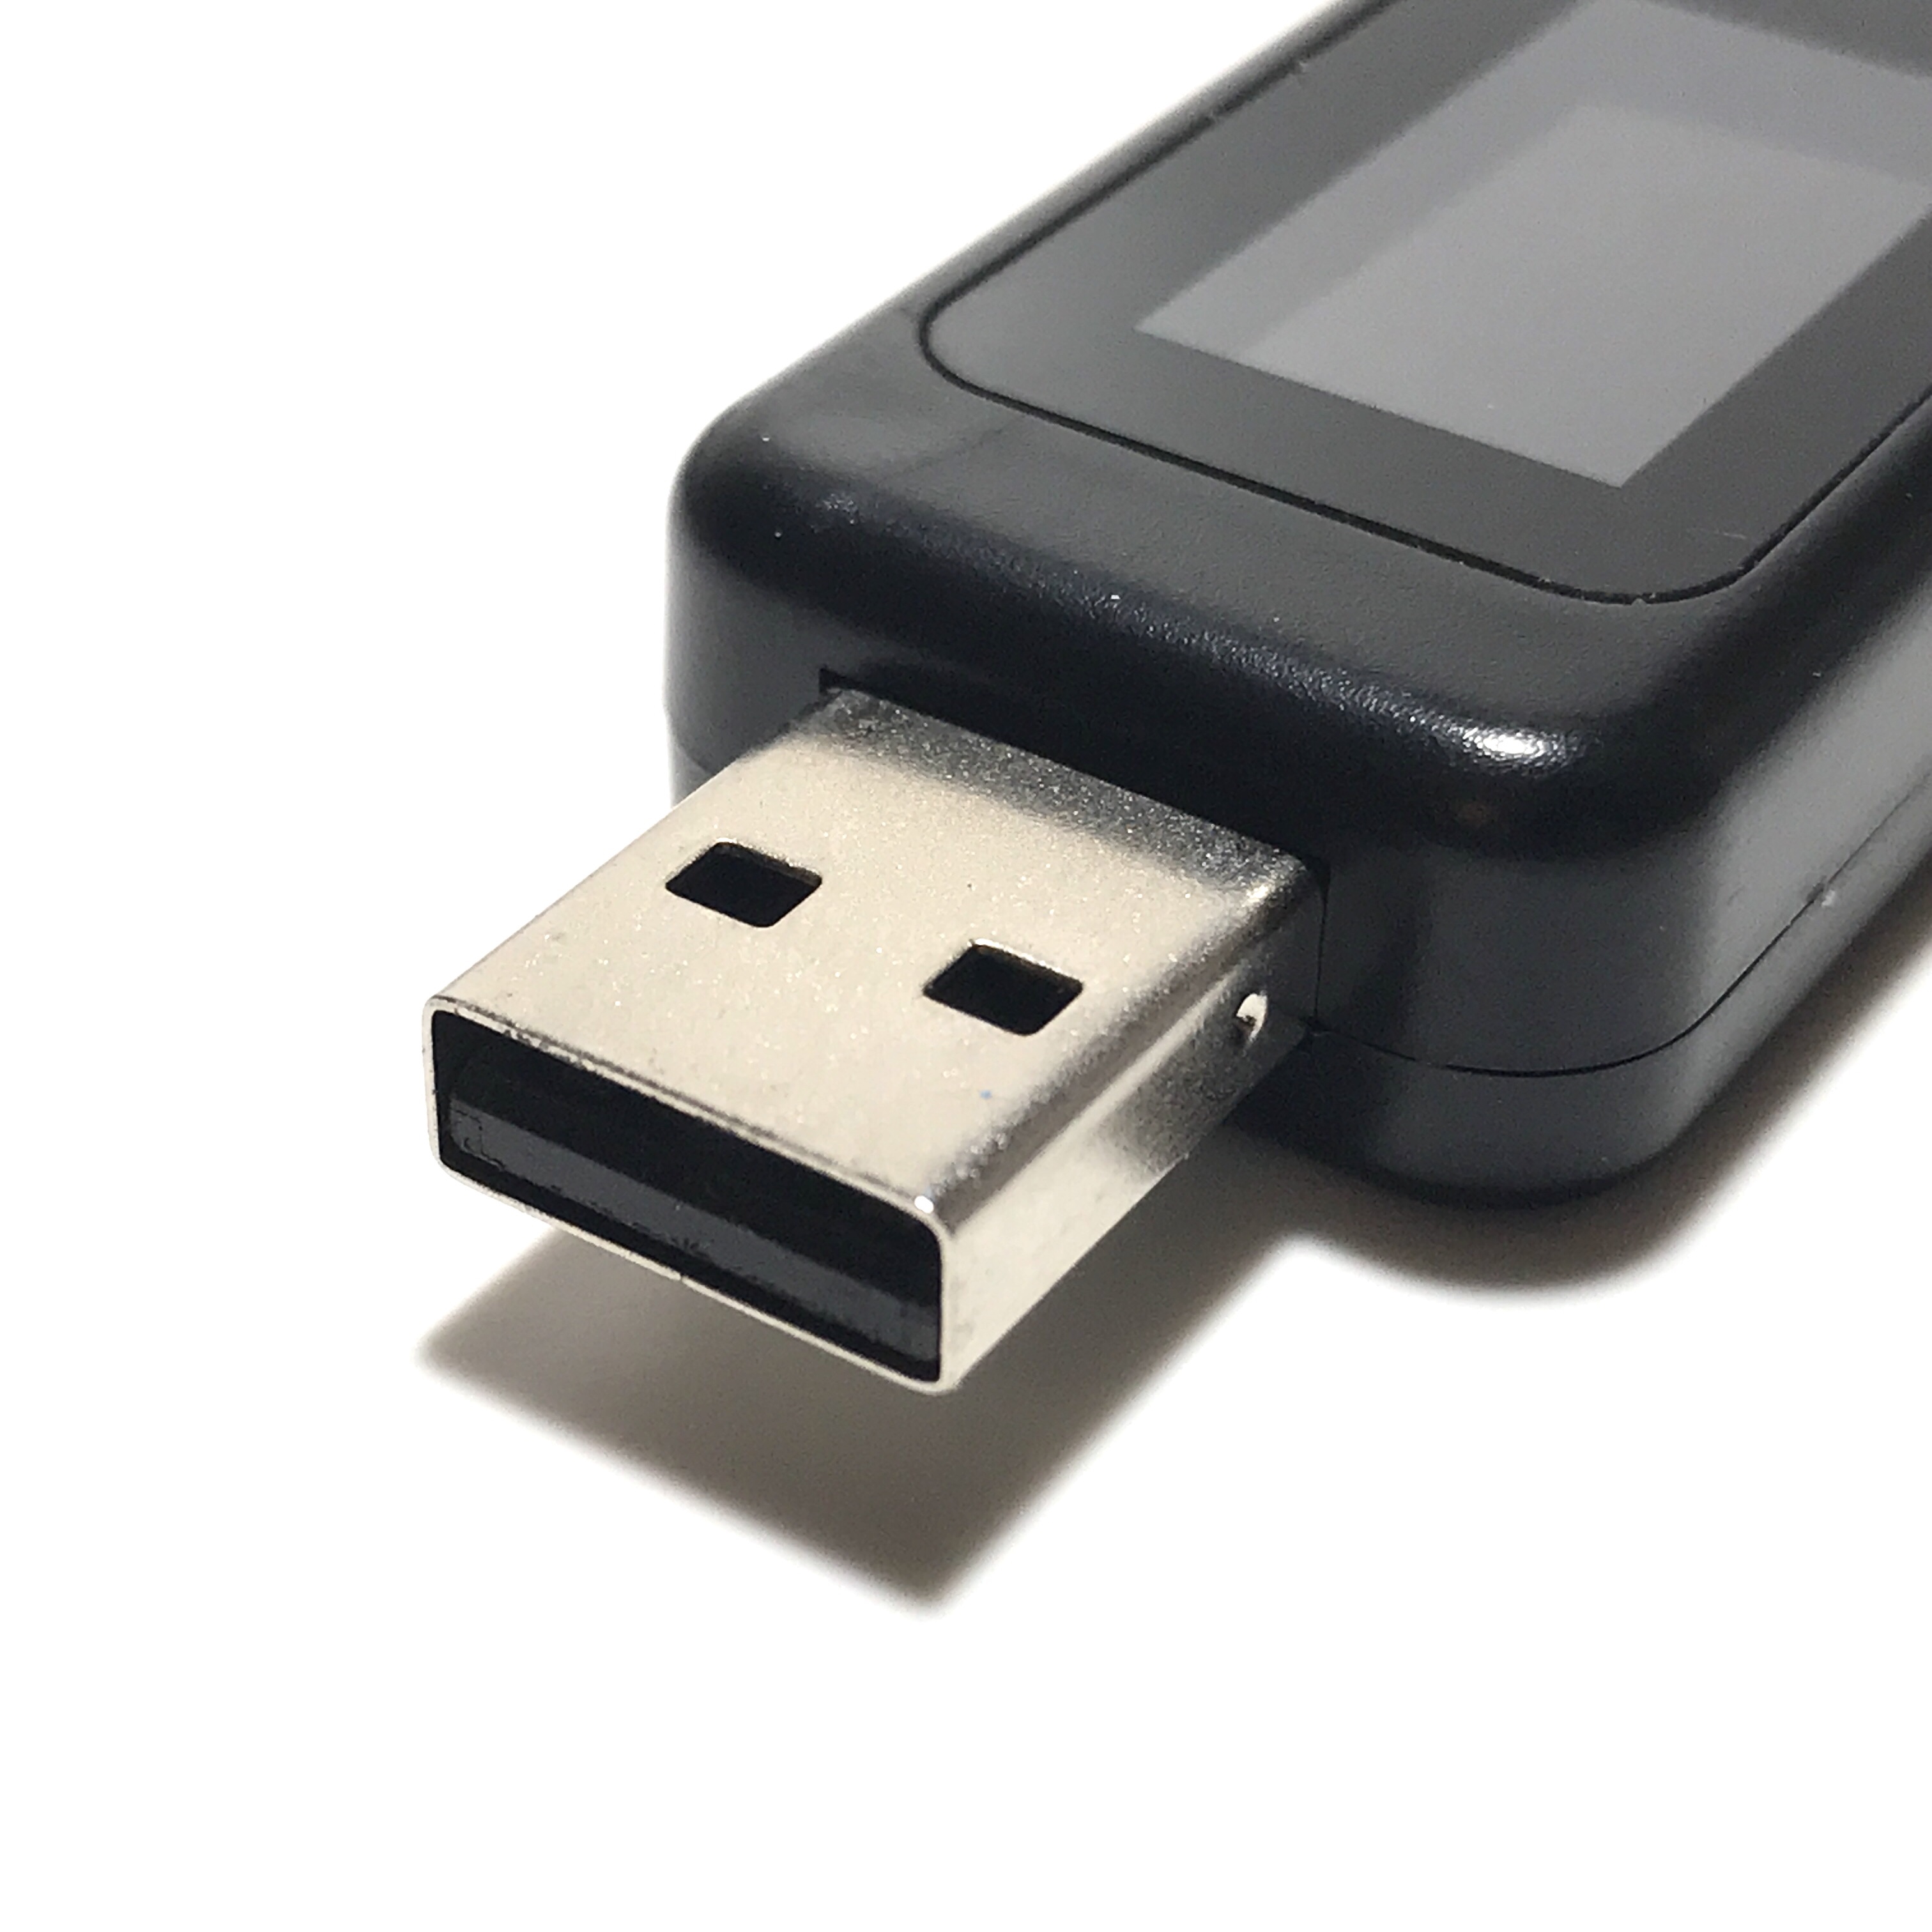 モバイルバッテリーの「大容量サギ」に騙されないたった一つの方法。USB電圧テスター（チェッカー）で真の充電容量を計測するには | コイケログ